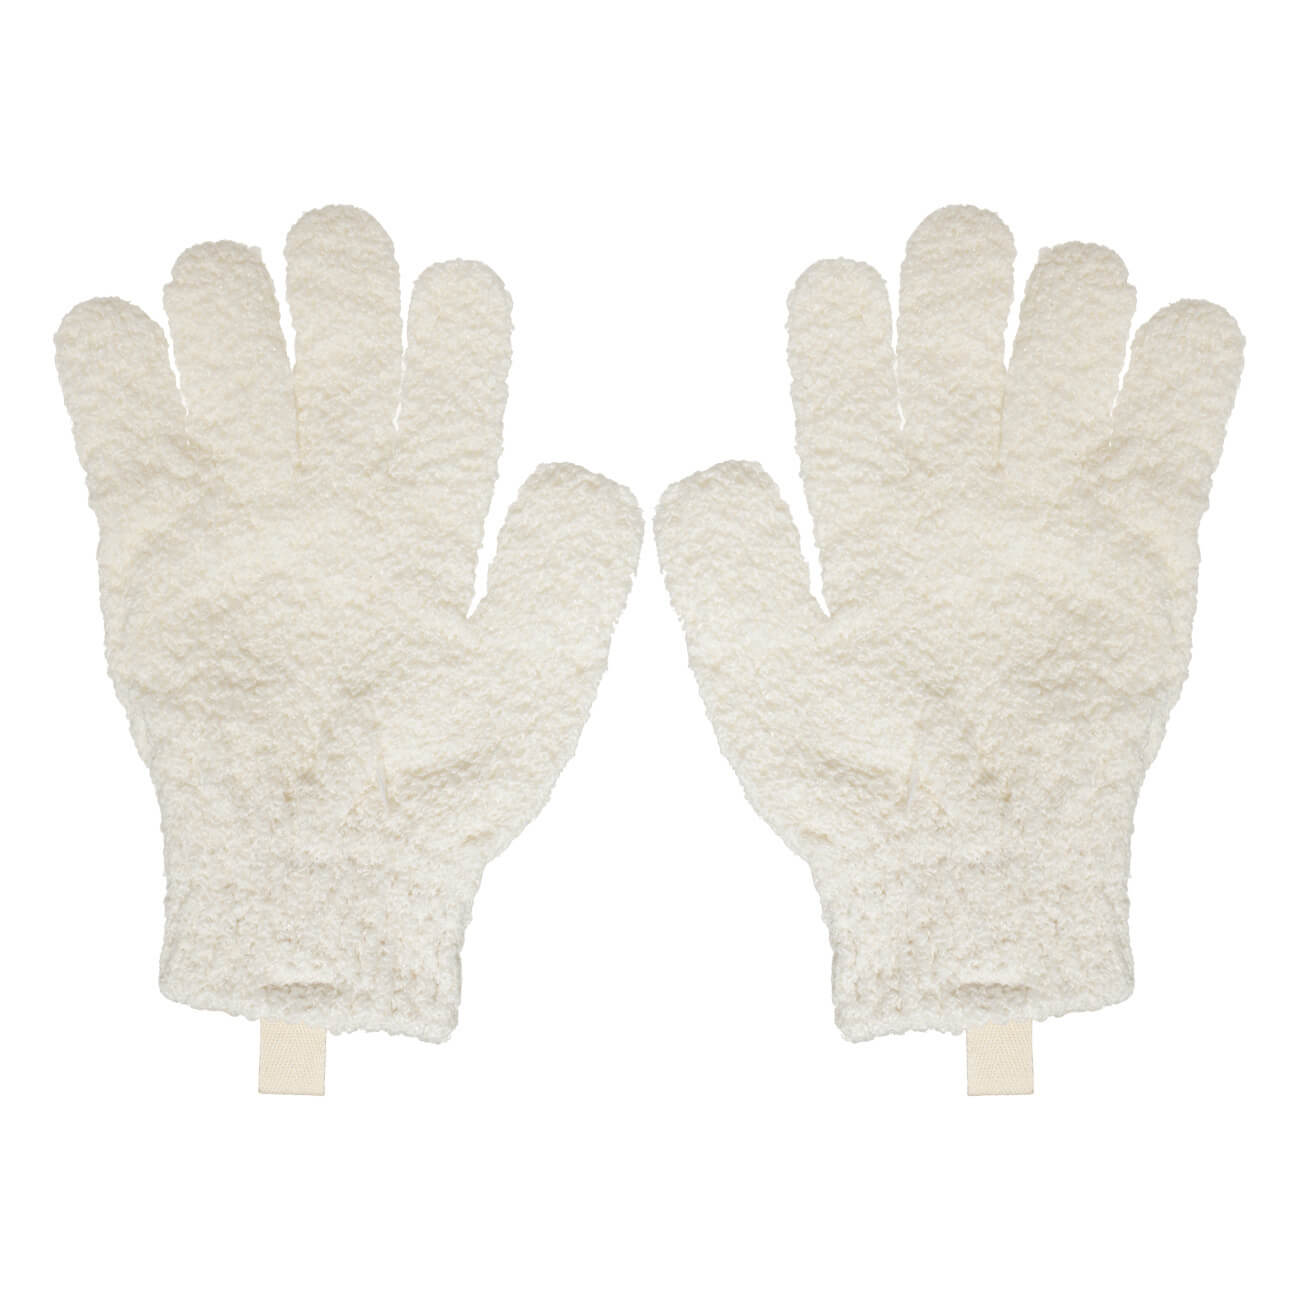 Перчатка для мытья тела, 21 см, 2 шт, отшелушивающая, полиэстер, молочная, Unique spa перчатка для мытья тела 19 см 2 шт нейлон серая gentle spa